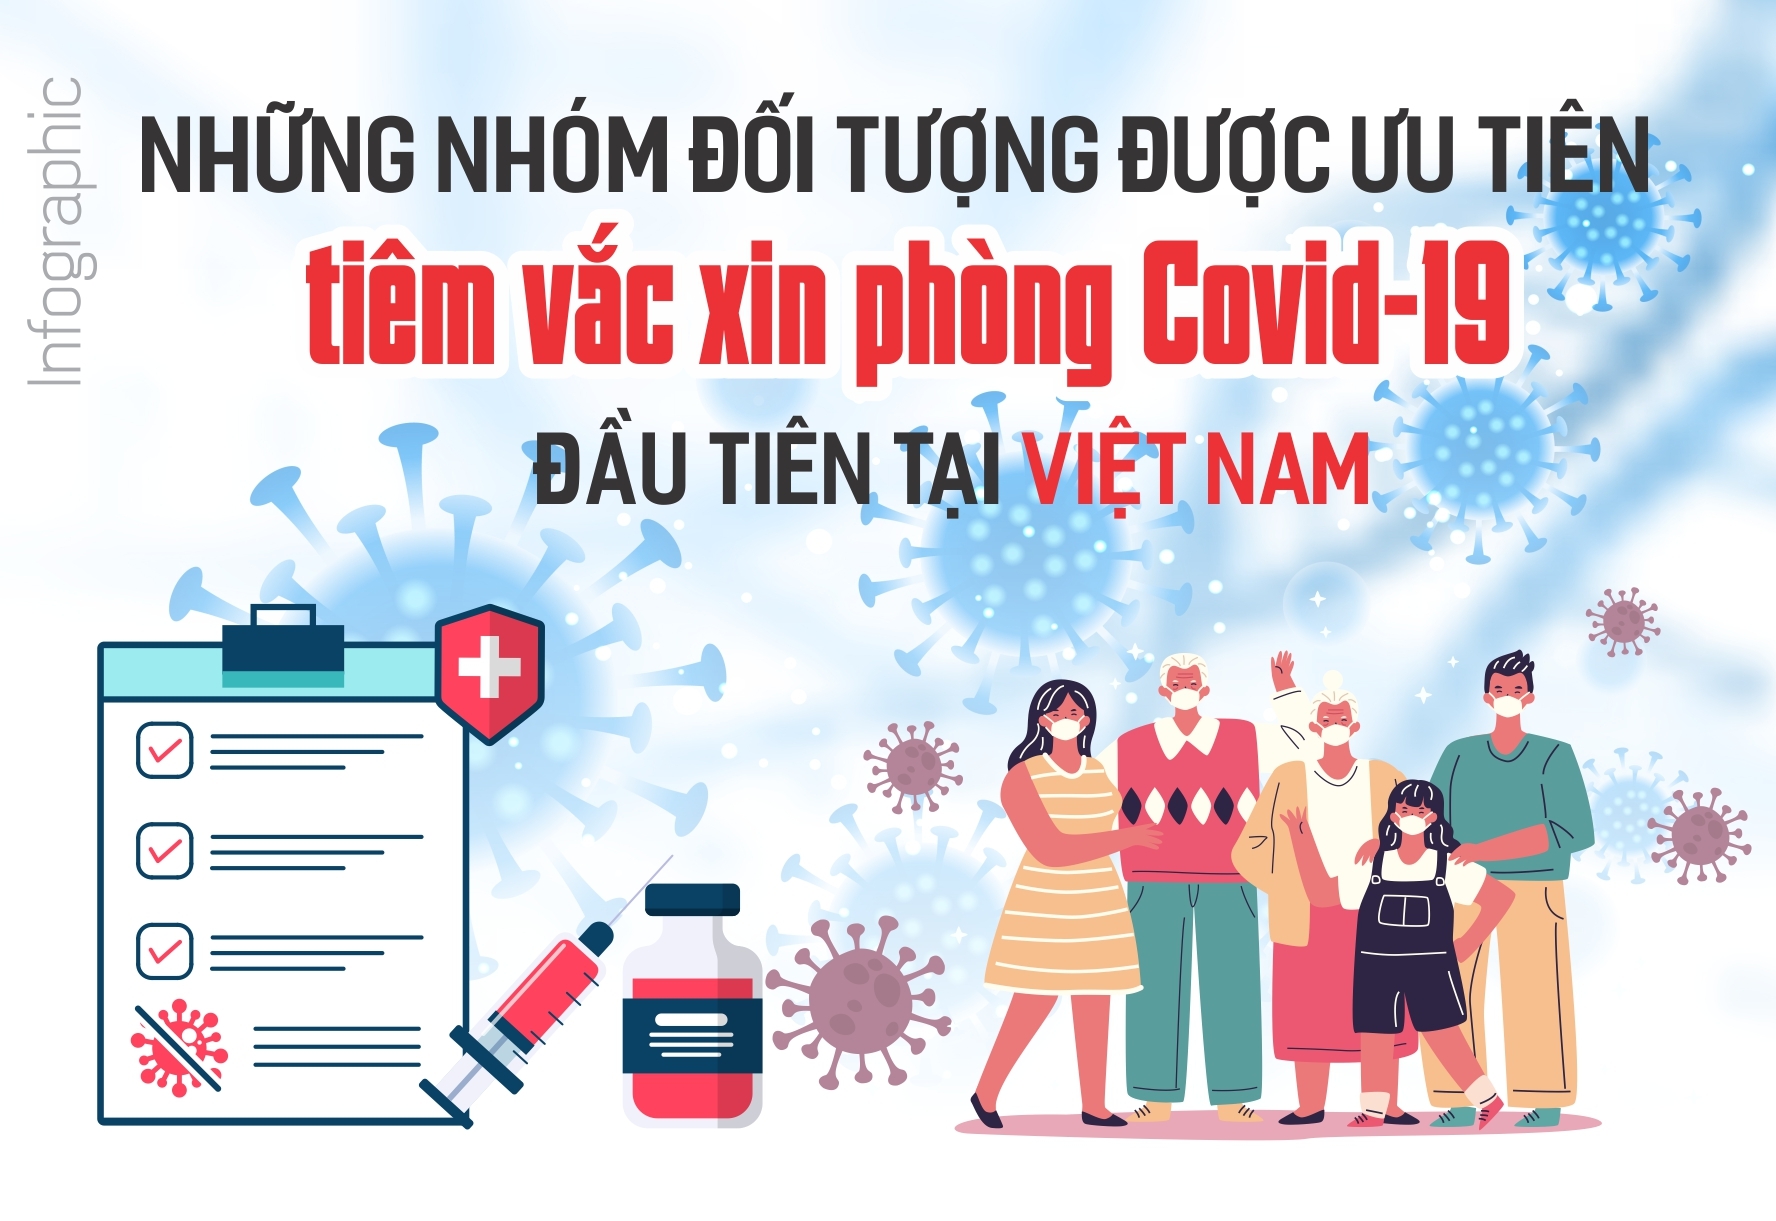 [INFOGRAPHIC] 11 nhóm đối tượng được ưu tiên tiêm vắc xin phòng Covid-19 đầu tiên tại Việt Nam